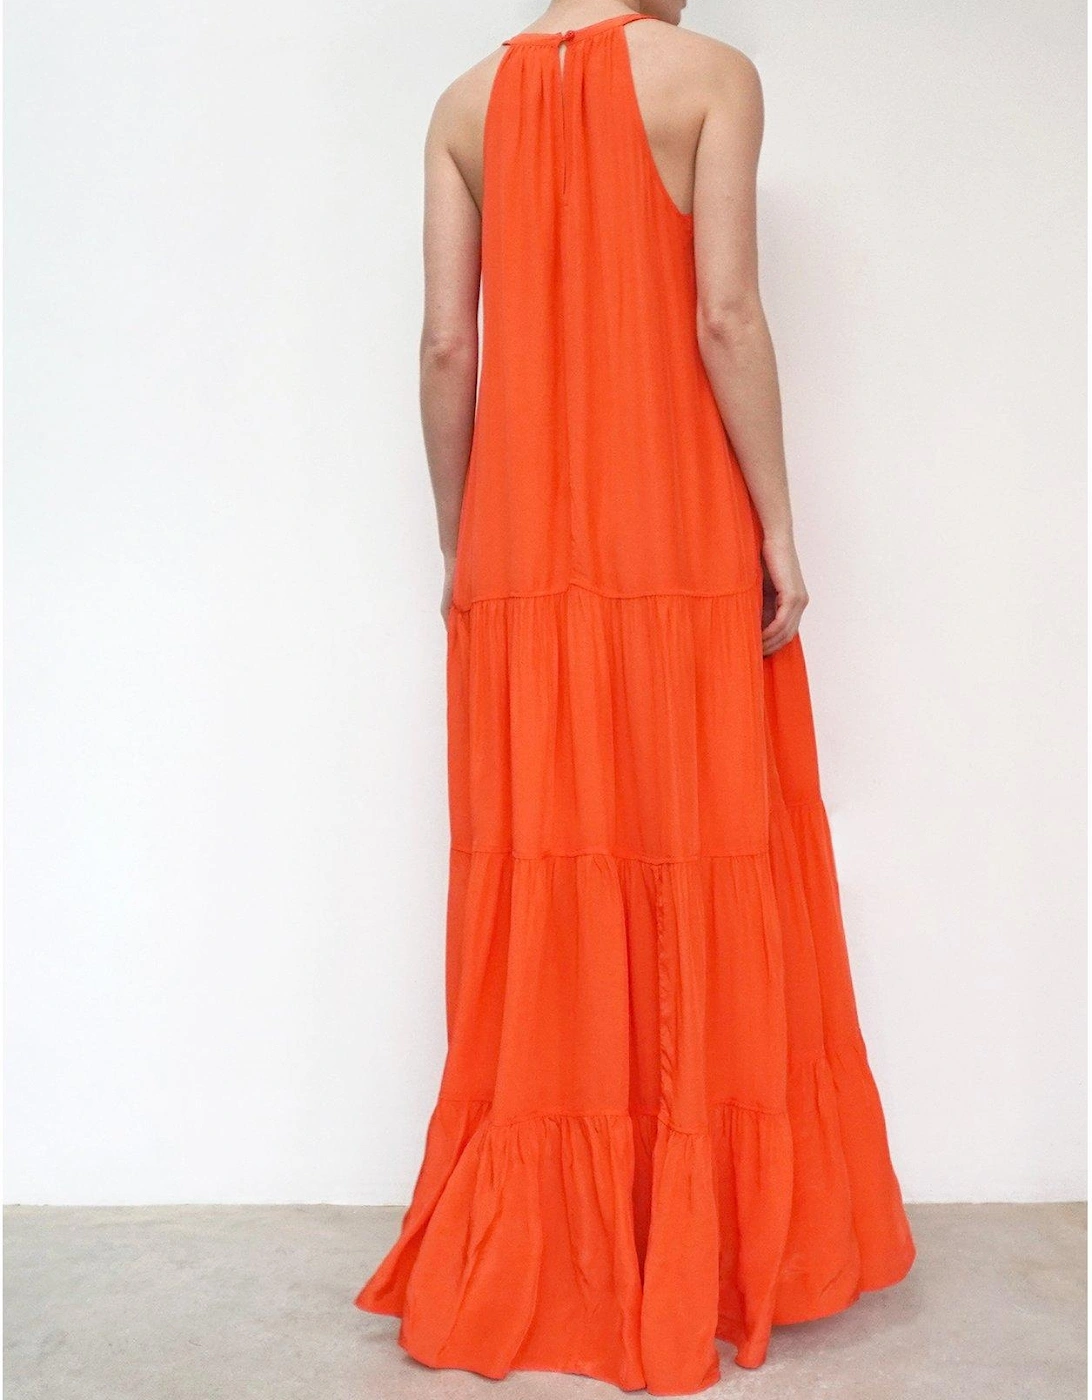 Tiered Halter Neck Maxi Dress - Orange